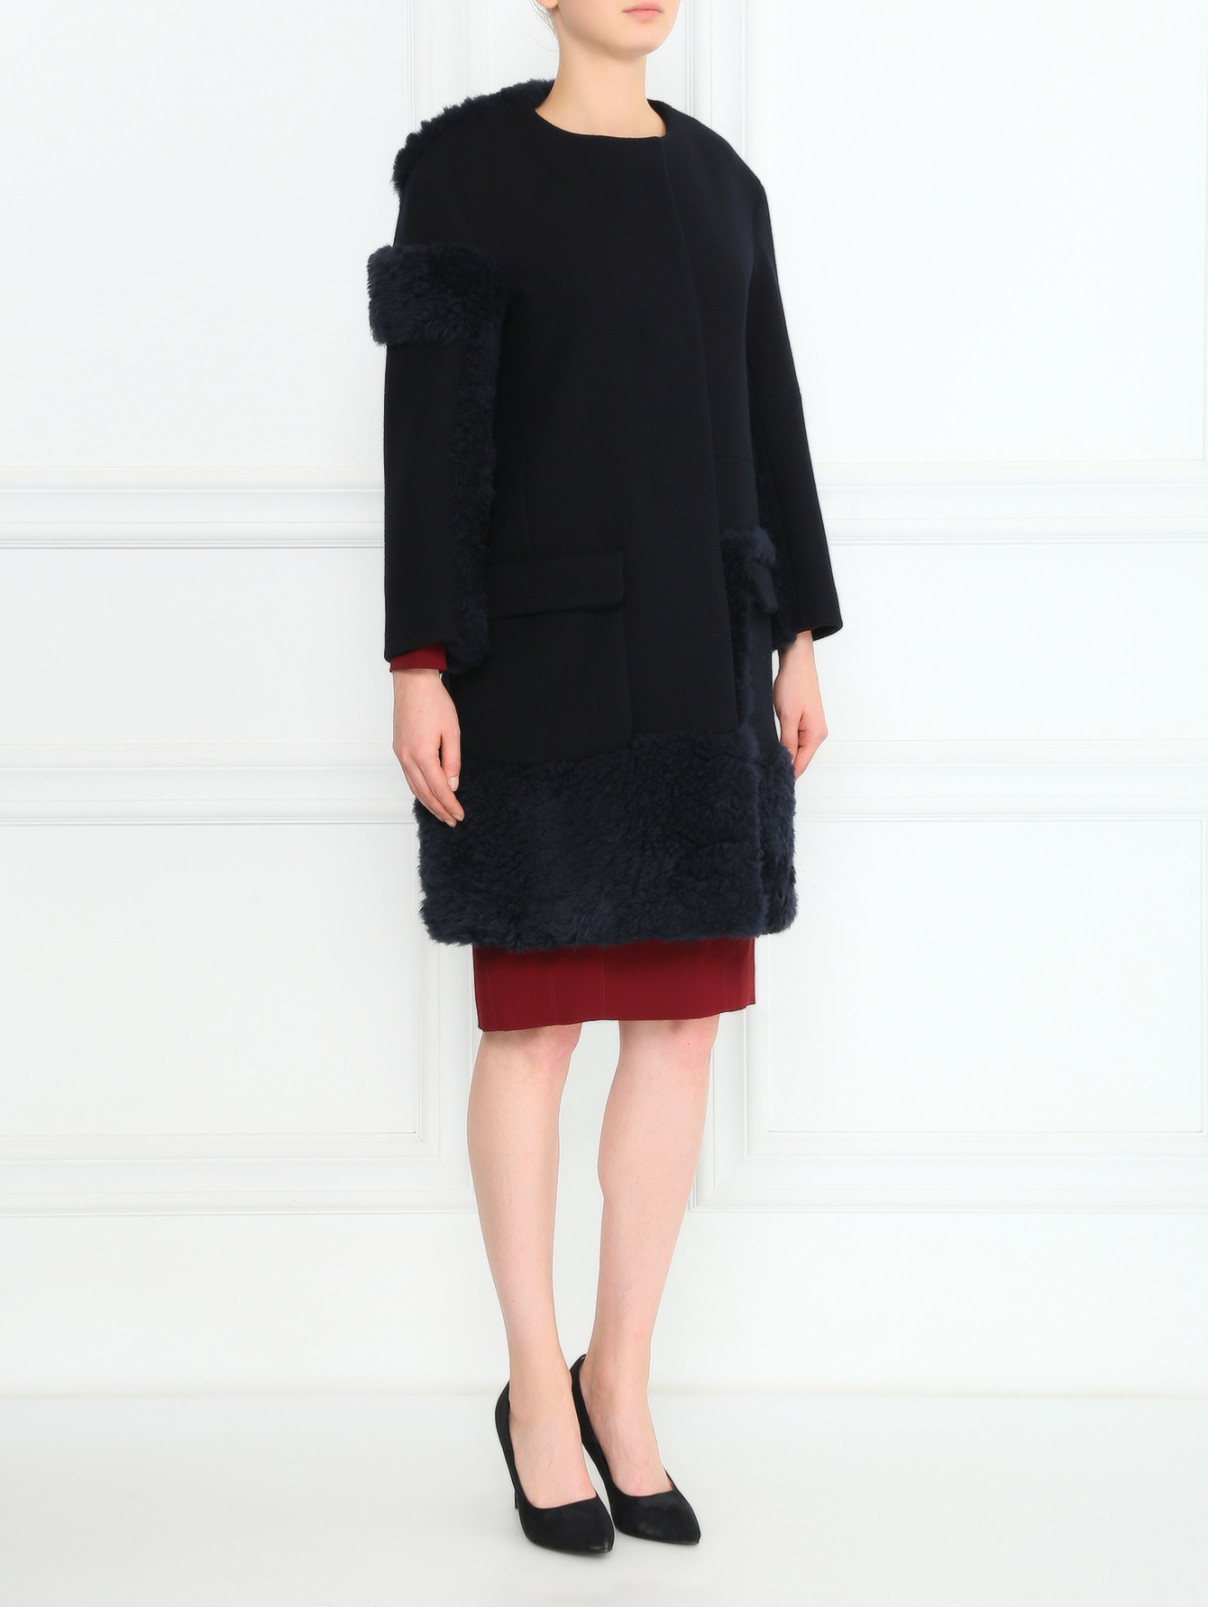 Пальто из шерсти с вставками из овчины Jil Sander  –  Модель Общий вид  – Цвет:  Черный